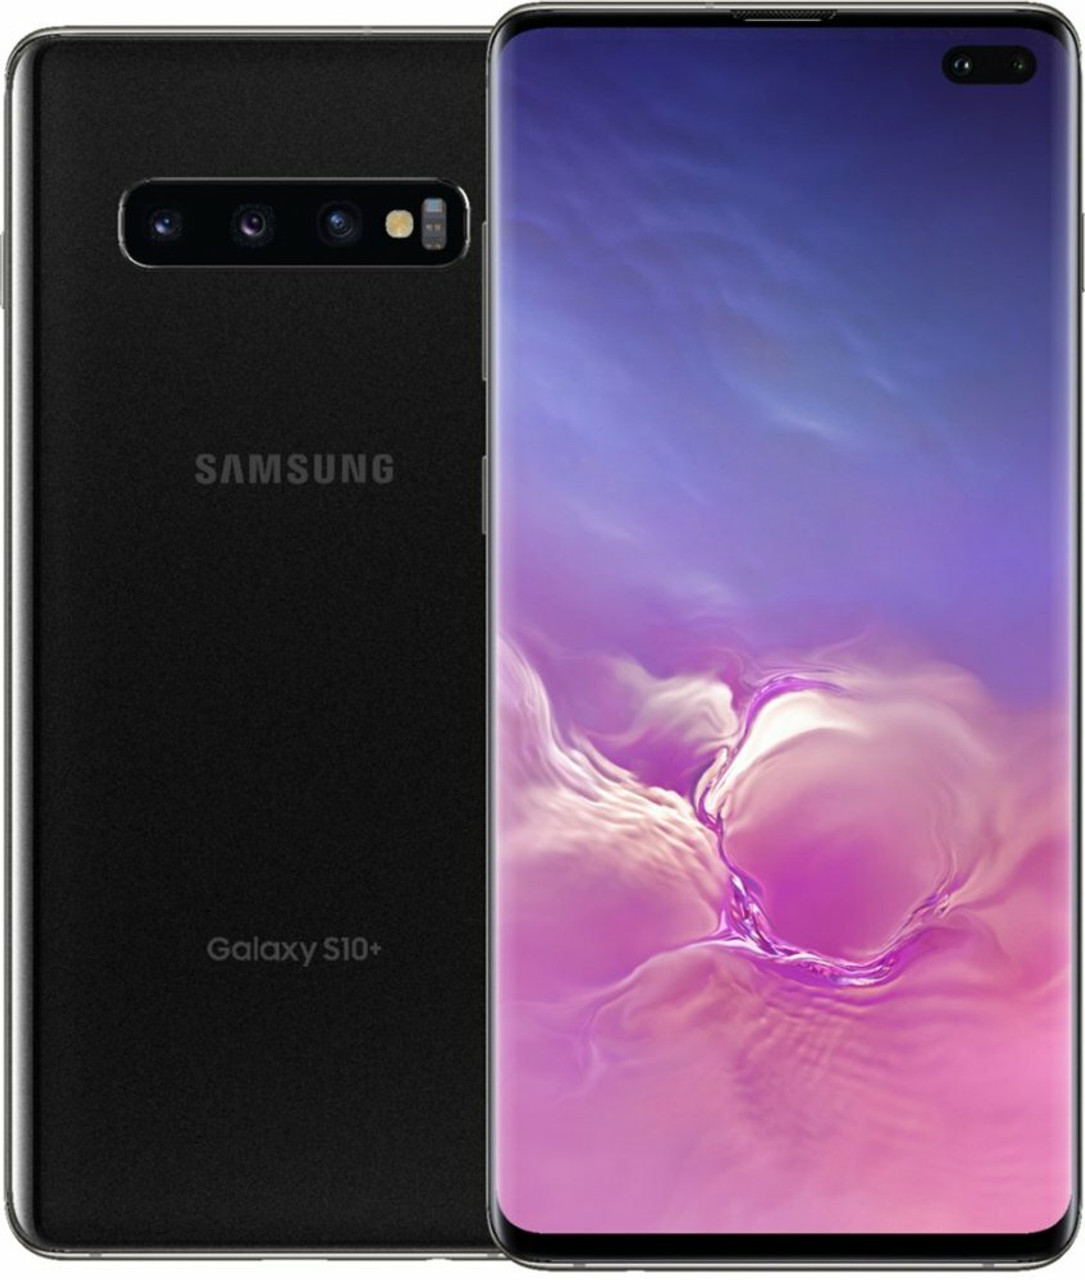 SIMフリー版 SAMSUNG Galaxy S10